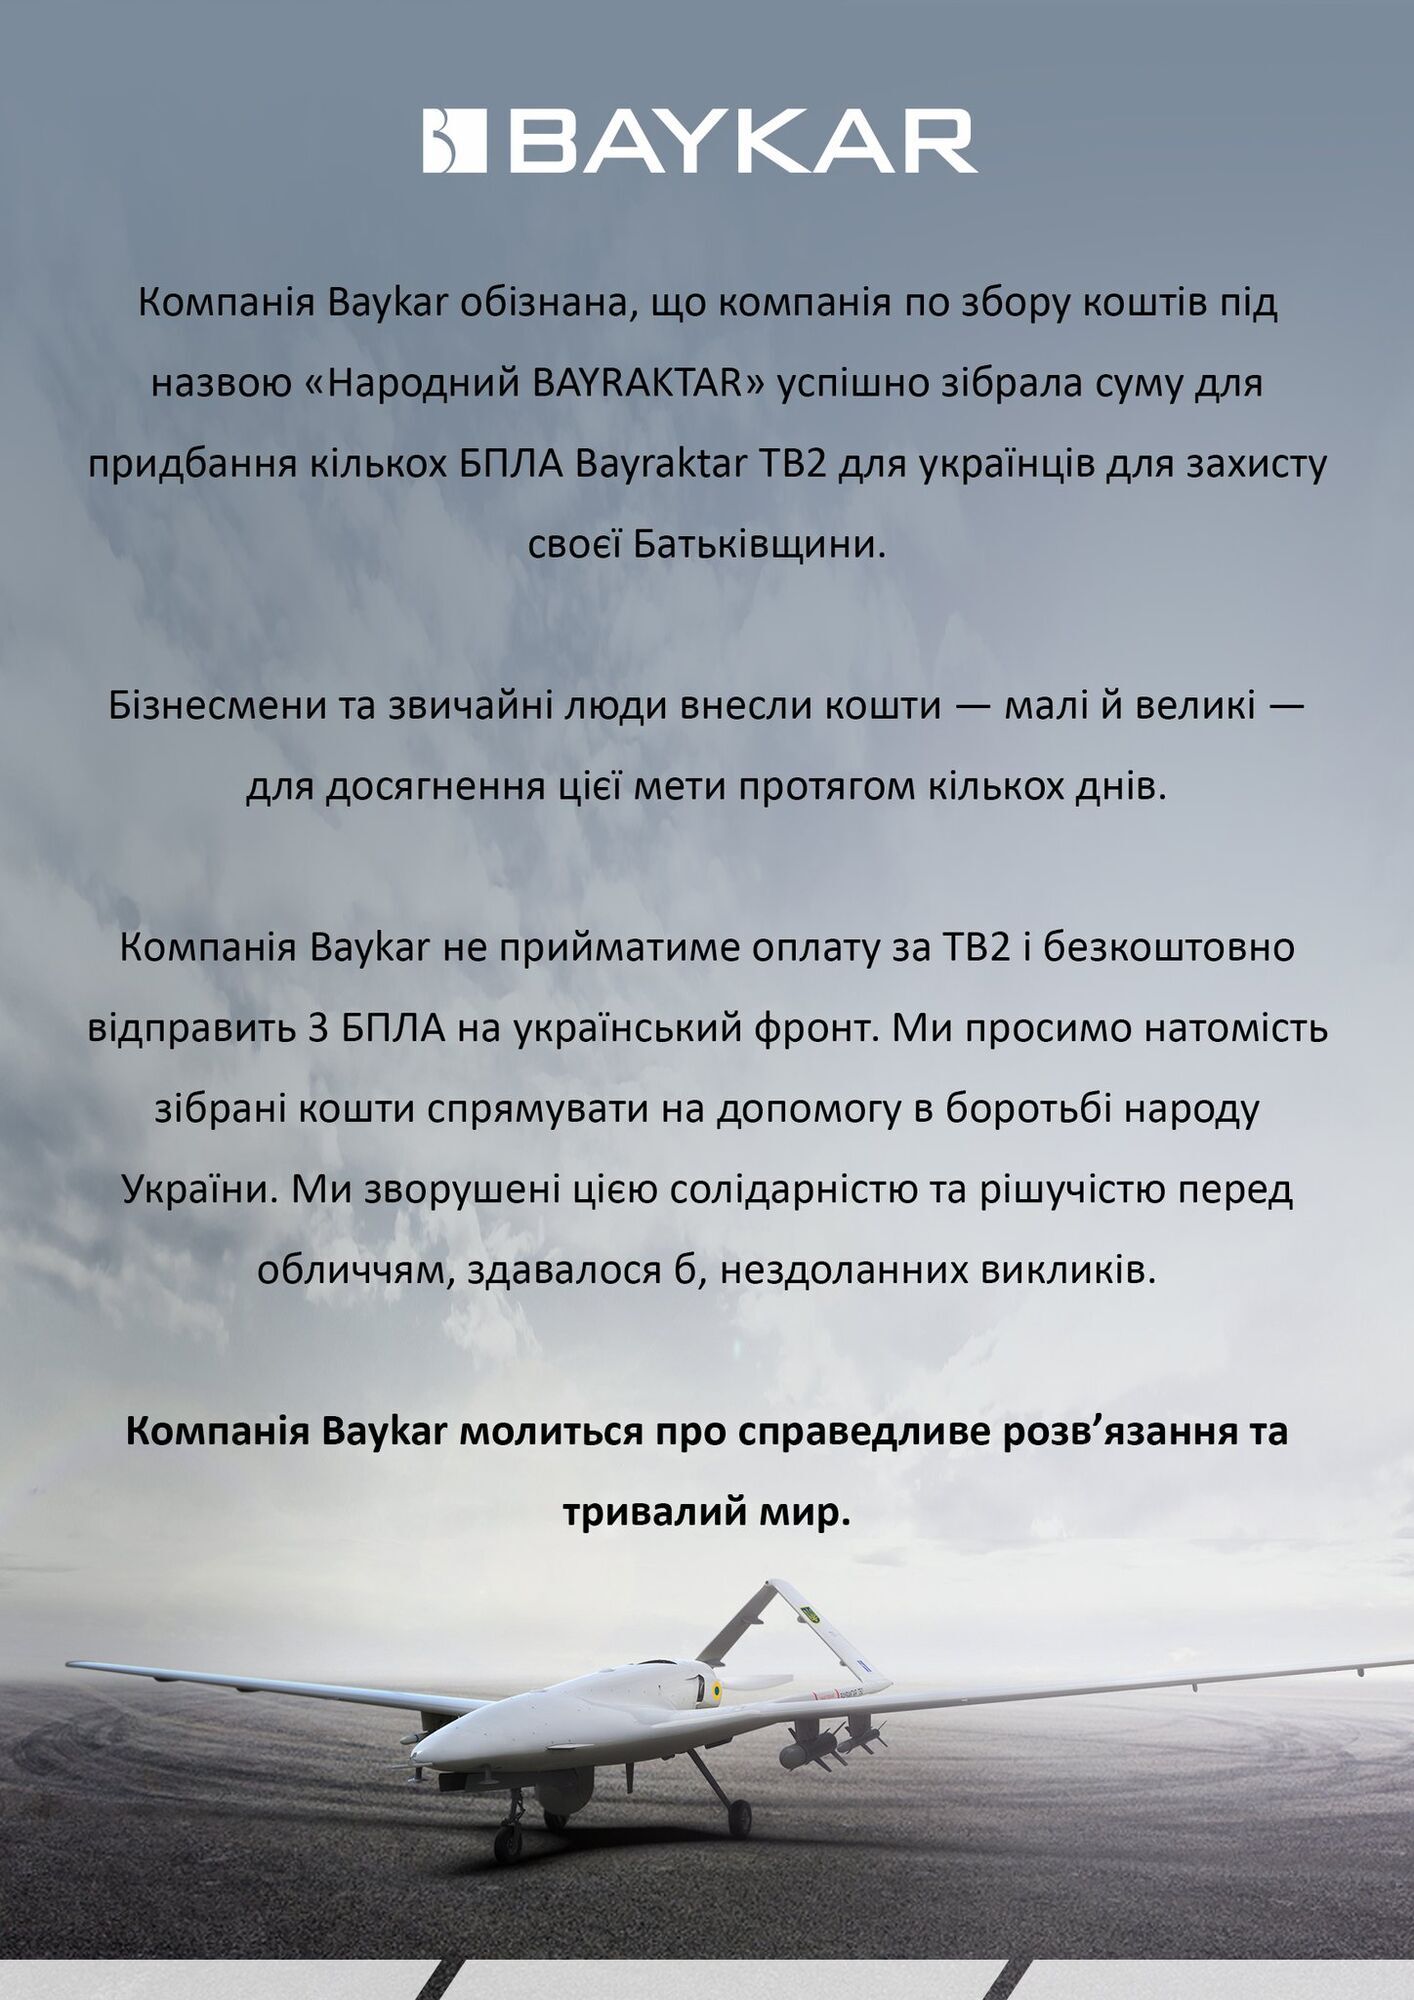 Турецкая компания Baykar бесплатно передаст Украине 3 Bayraktar TB2